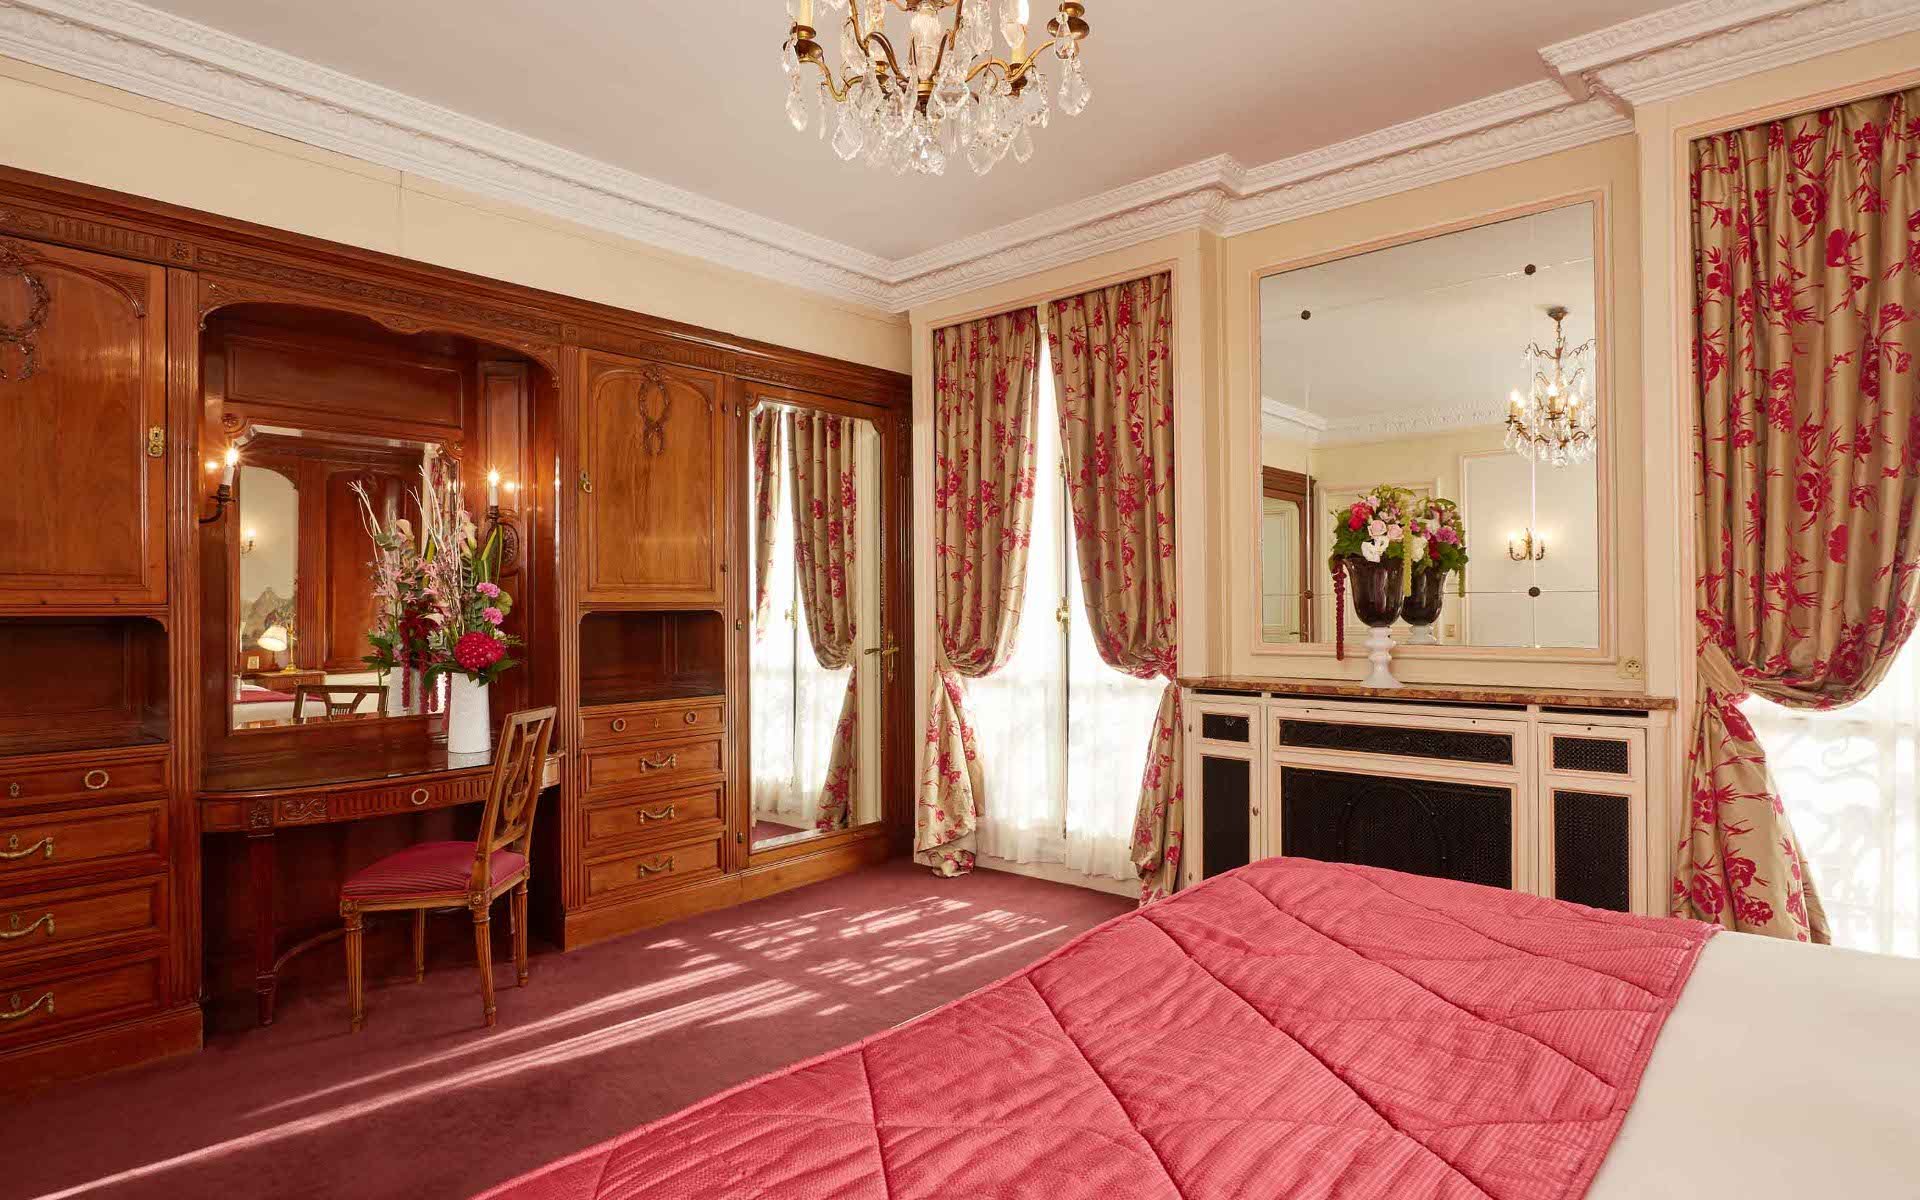 266/4-chambres/classique/Room Classic 1 -  Hotel Raphael Paris-min.jpg